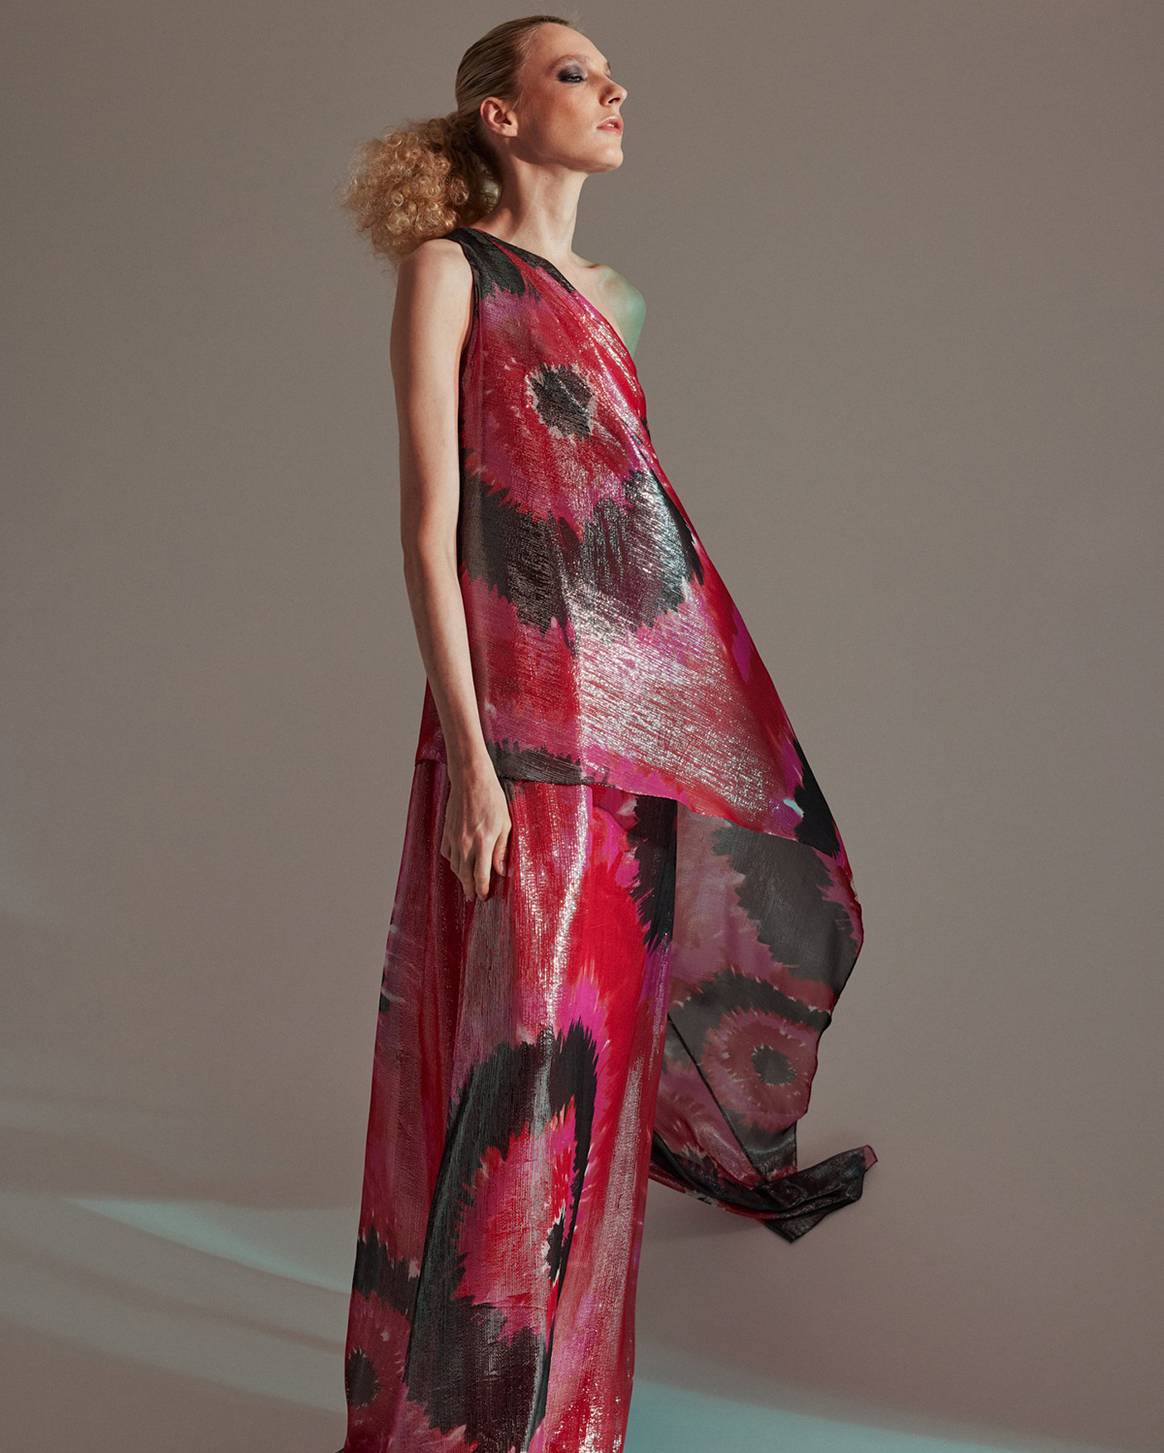 Photo Credits: “Beverly” printed Lurex gown. Halston x Netflix.